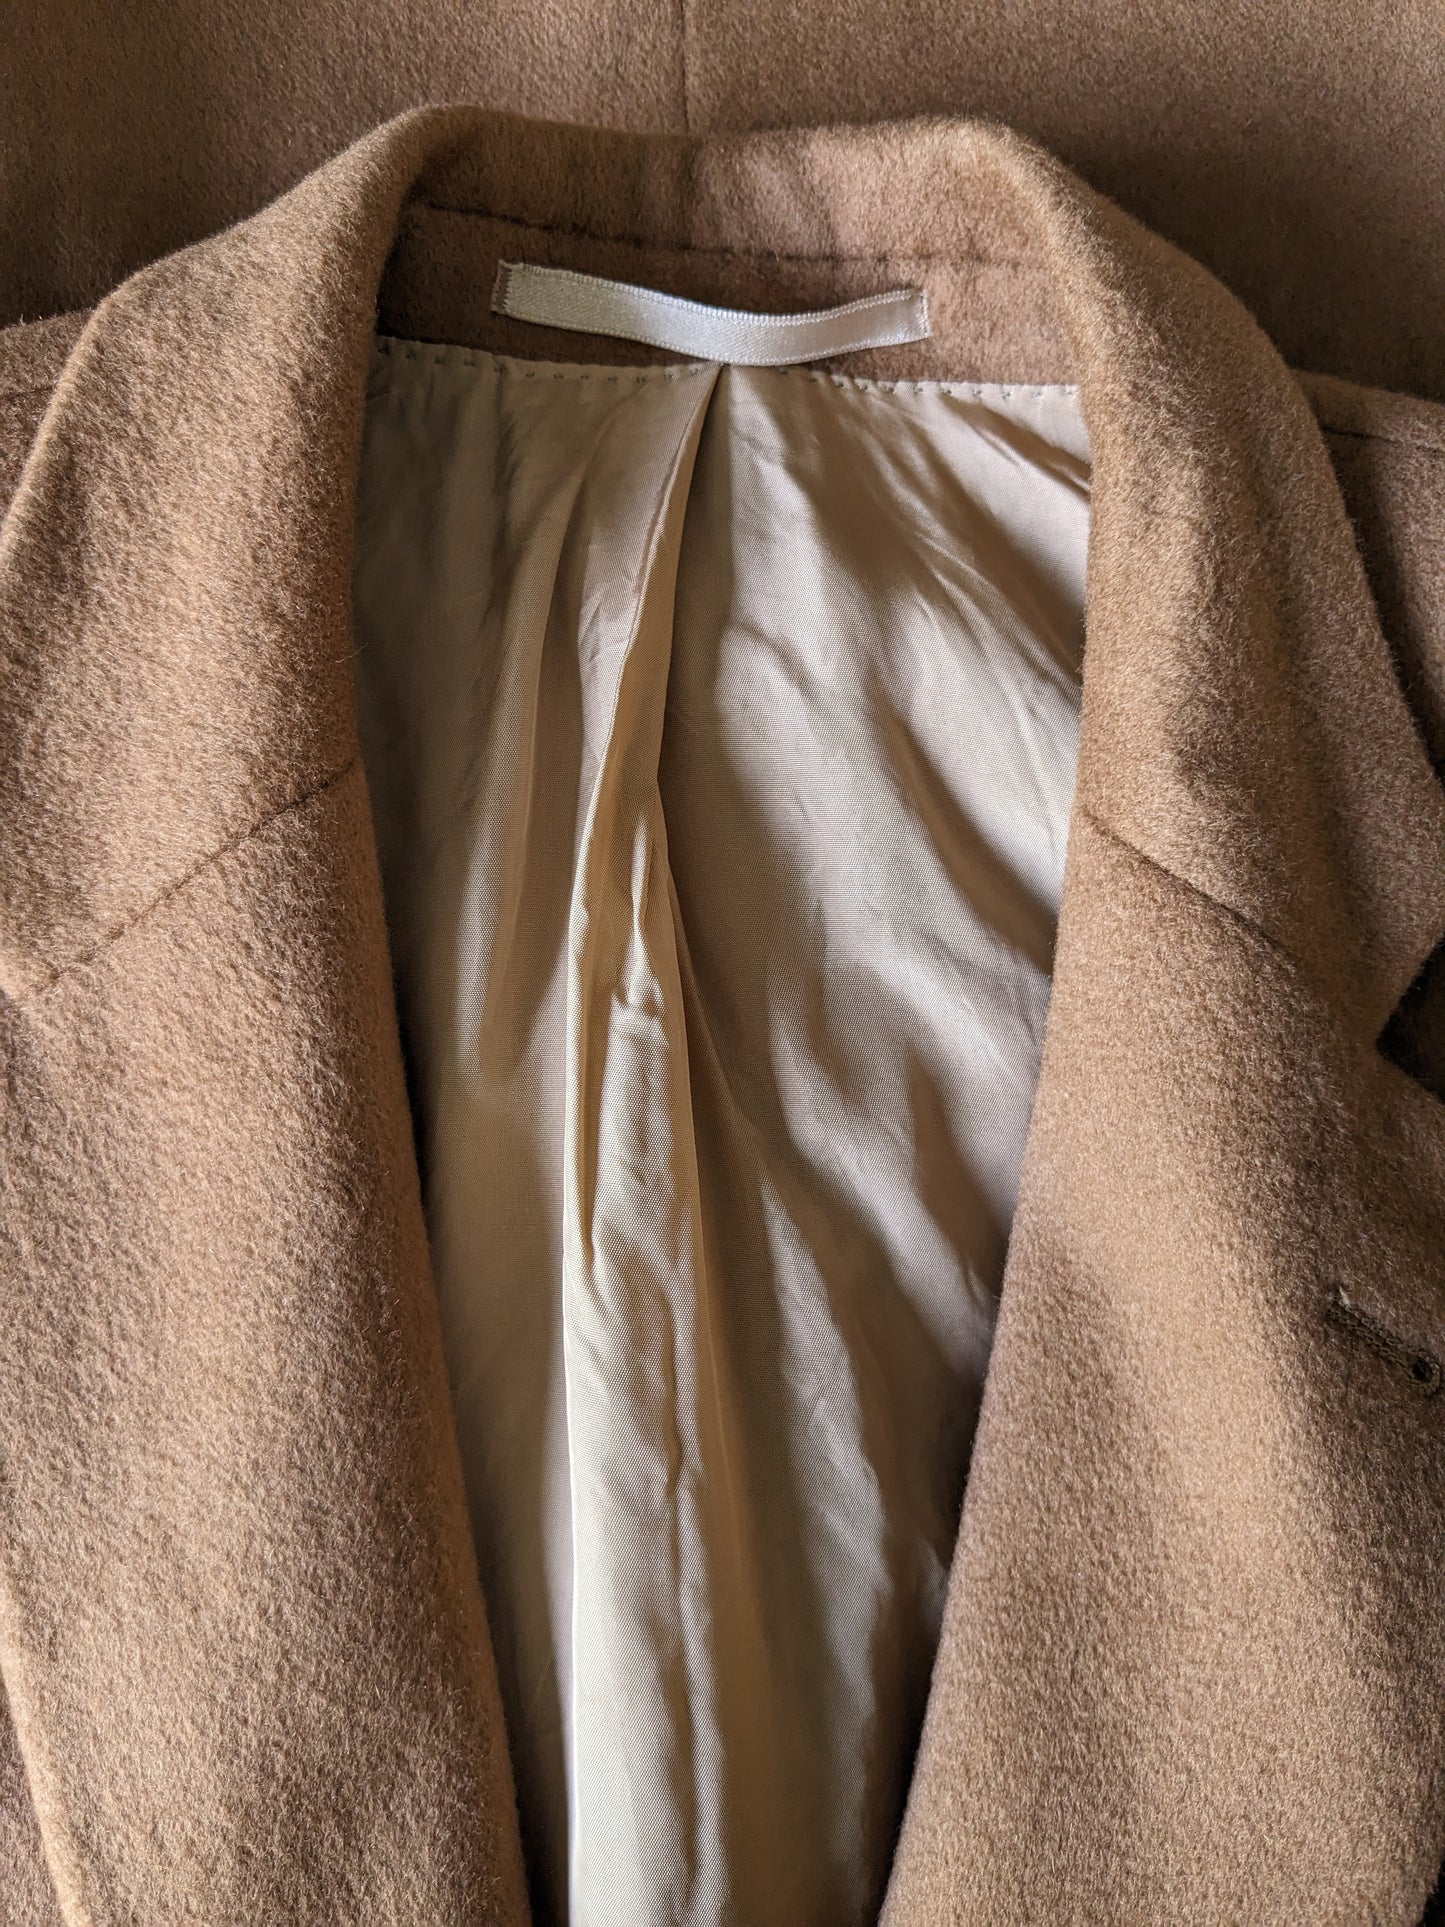 B Choix: Veste en cachemire. Tadavé pour Van Lange. De couleur marron. Taille 26 (52 / L) Sleeve de dégâts.